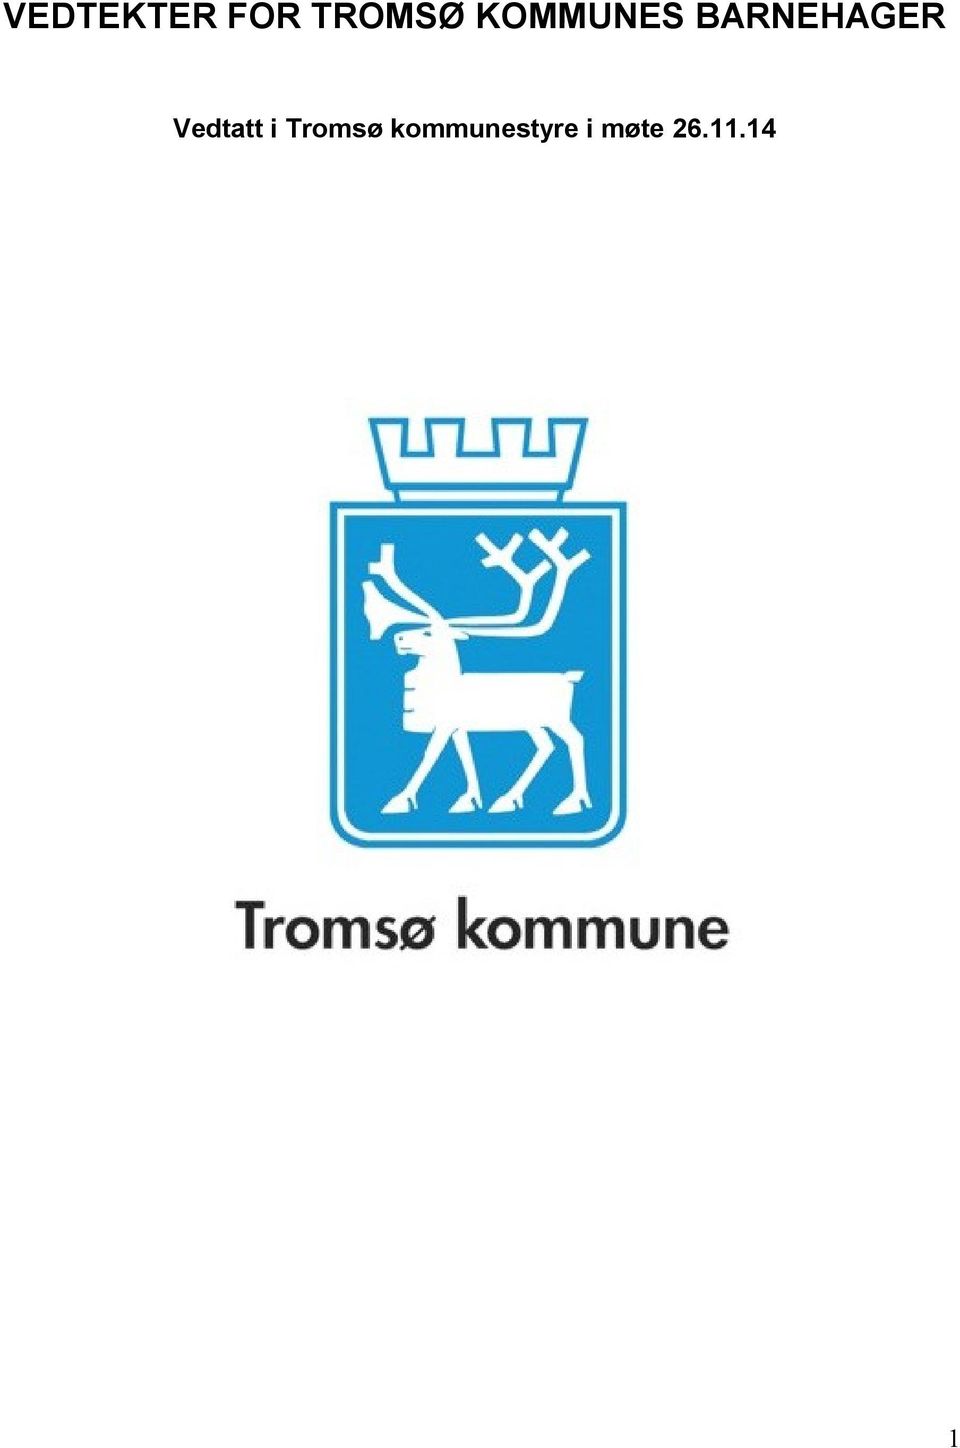 Vedtatt i Tromsø